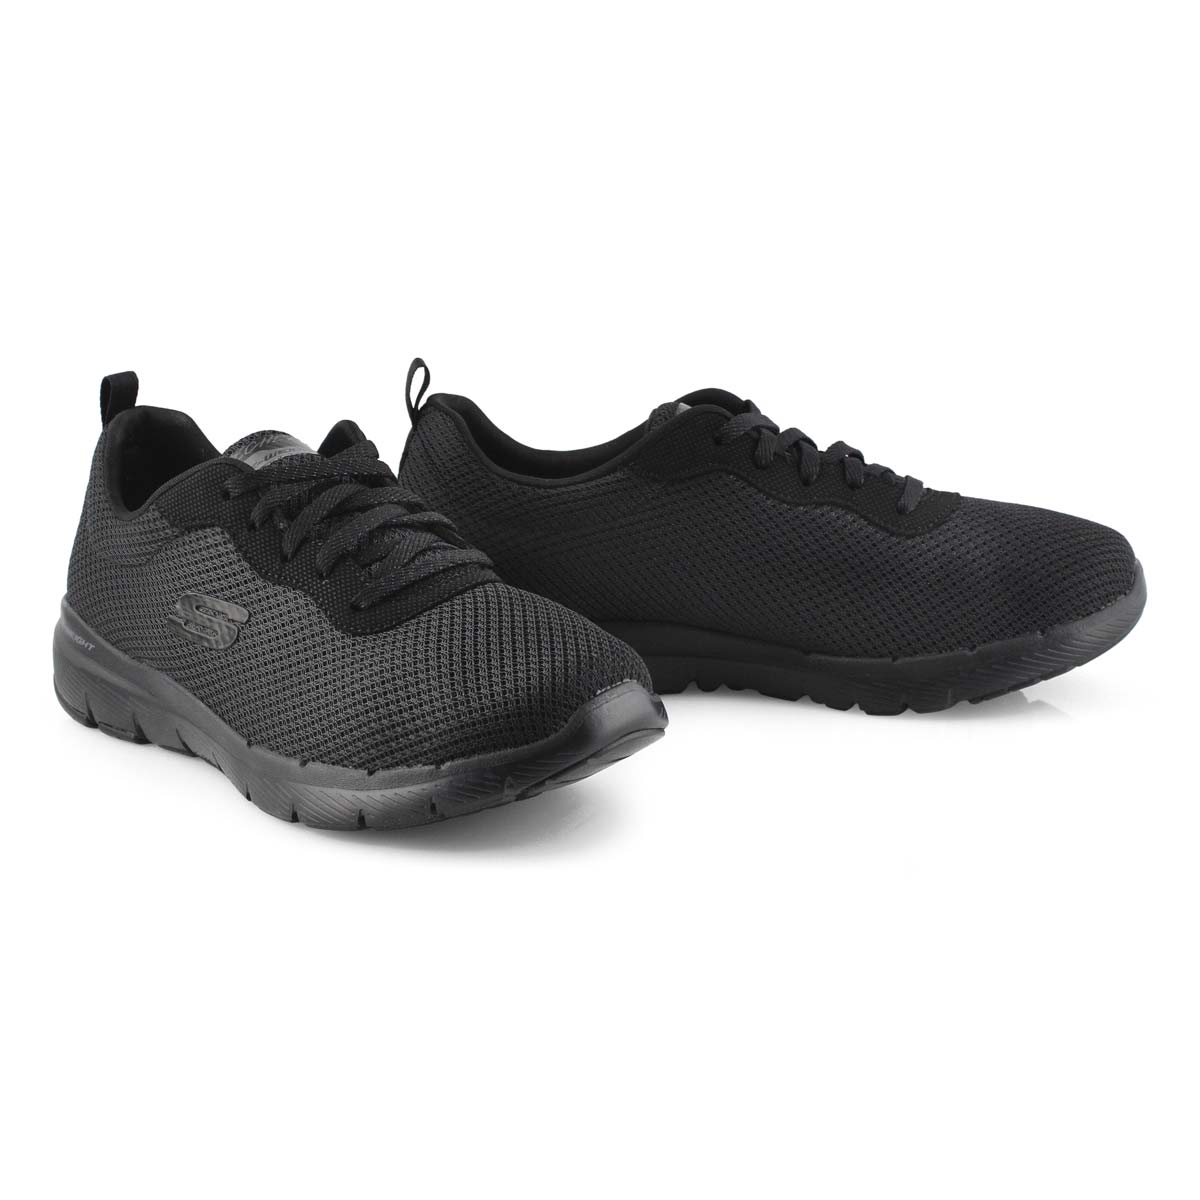 Women's Flex Appeal 3.0 Wide Sneaker - Black